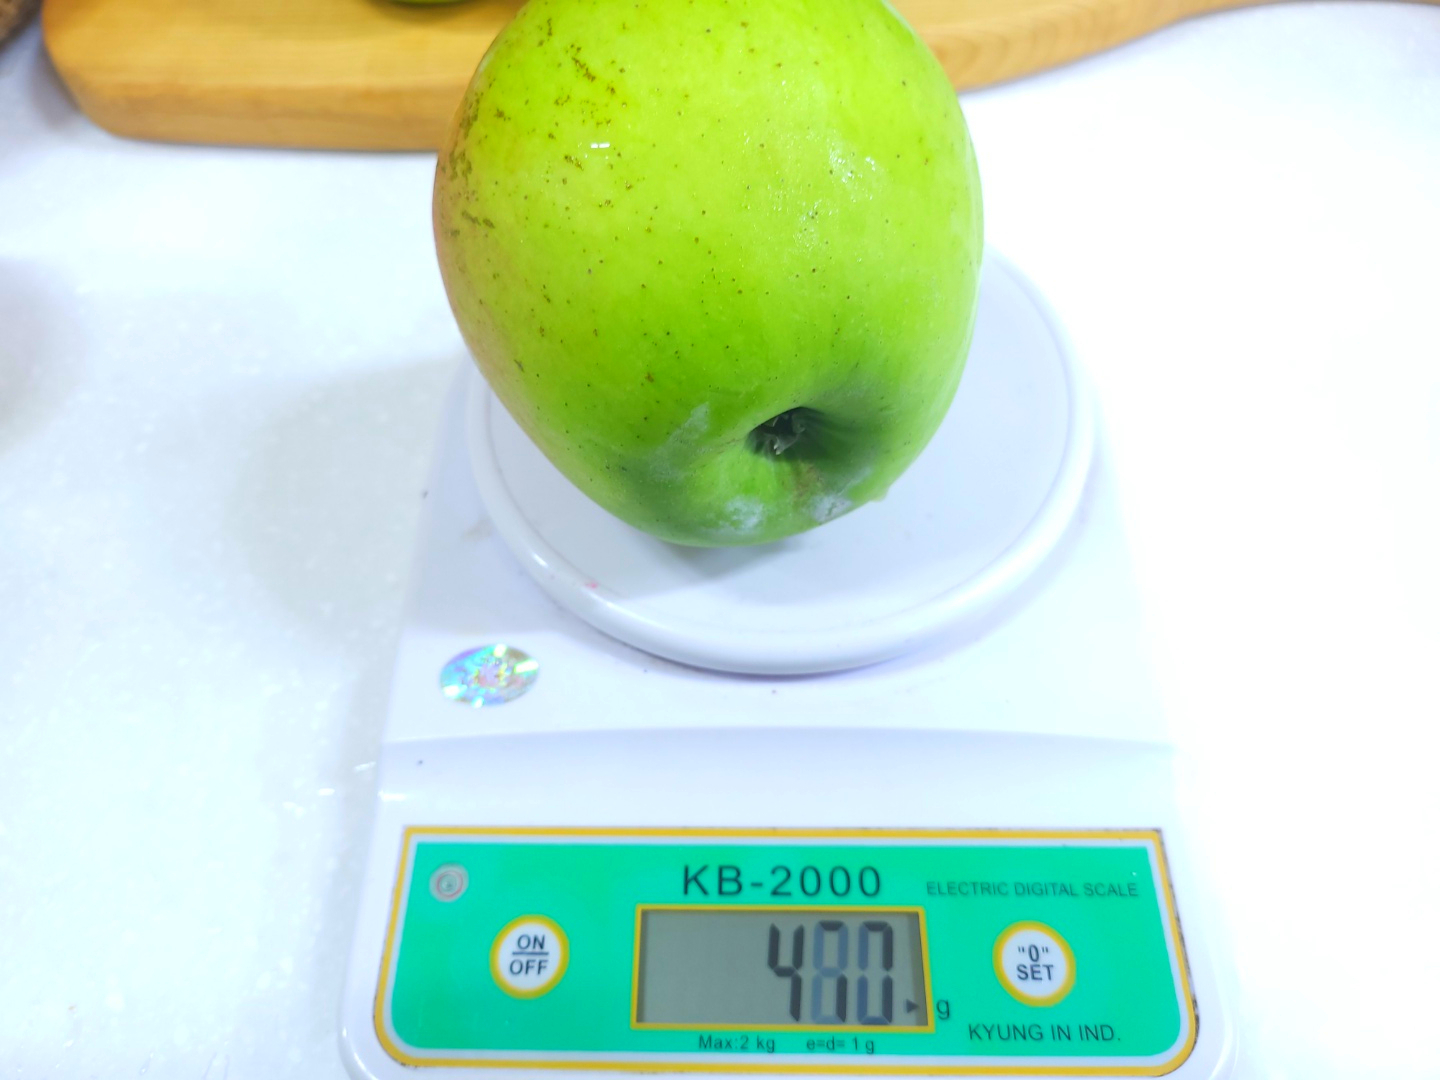 숙성 아오리 사과(청, 적 혼합) 무선별 못난이 2kg, 10kg 판매 안내입니다.(매진되었습니다.)